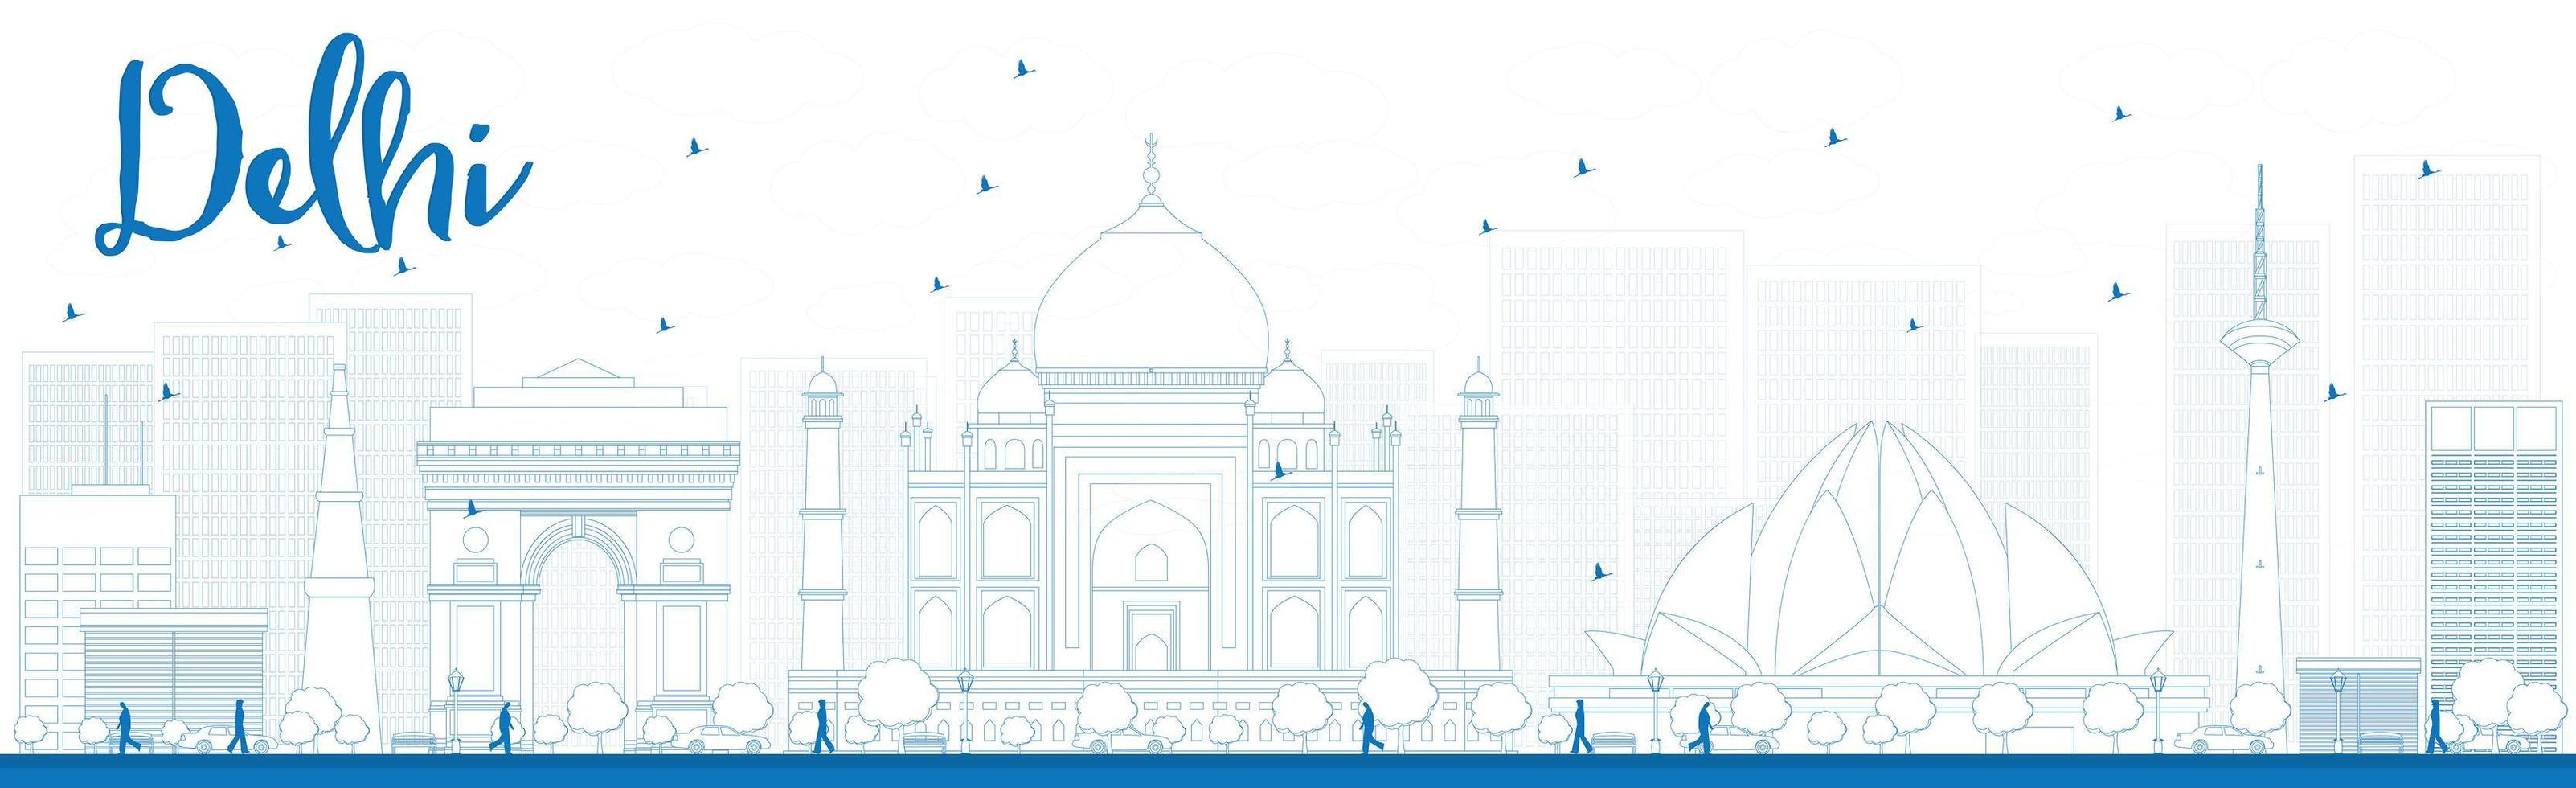 delinear el horizonte de delhi con puntos de referencia azules. vector